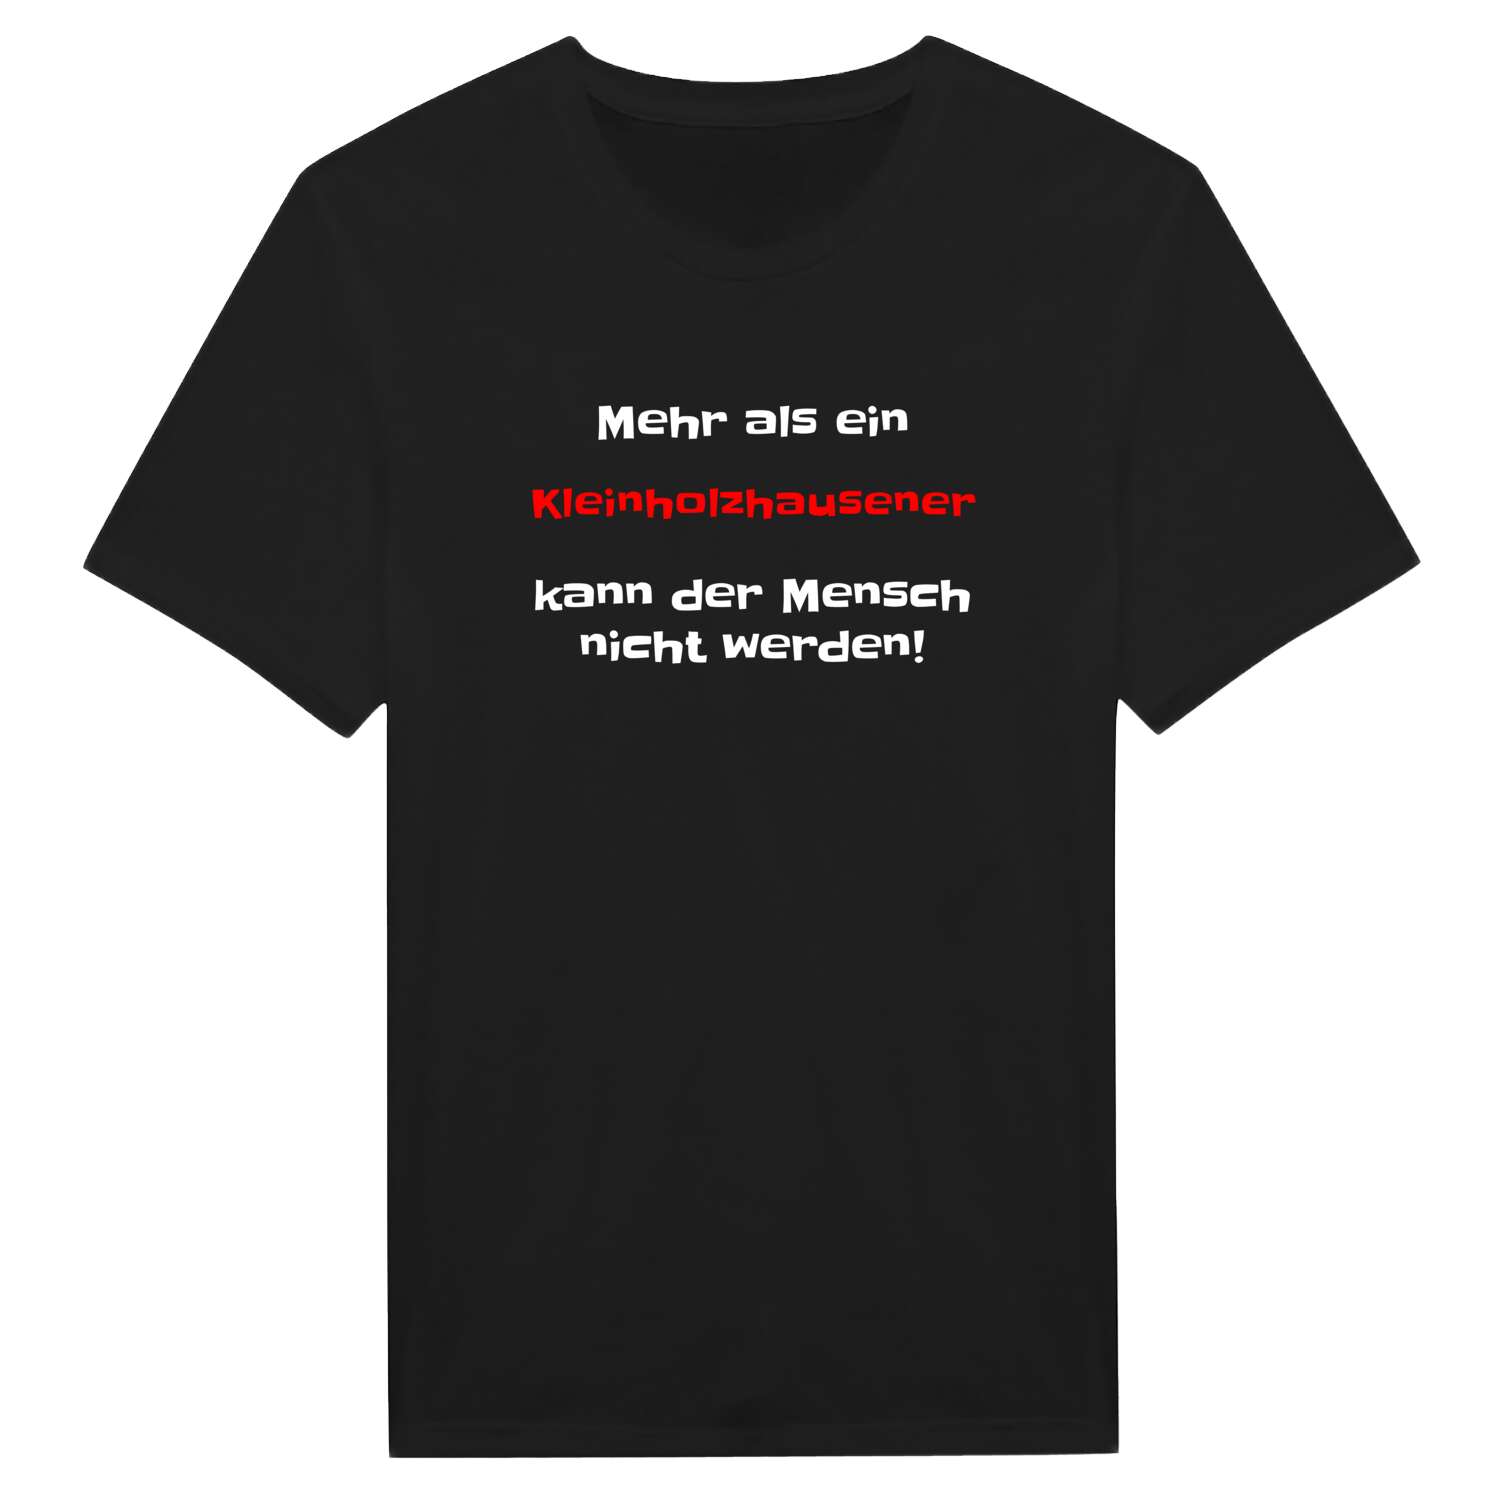 Kleinholzhausen T-Shirt »Mehr als ein«